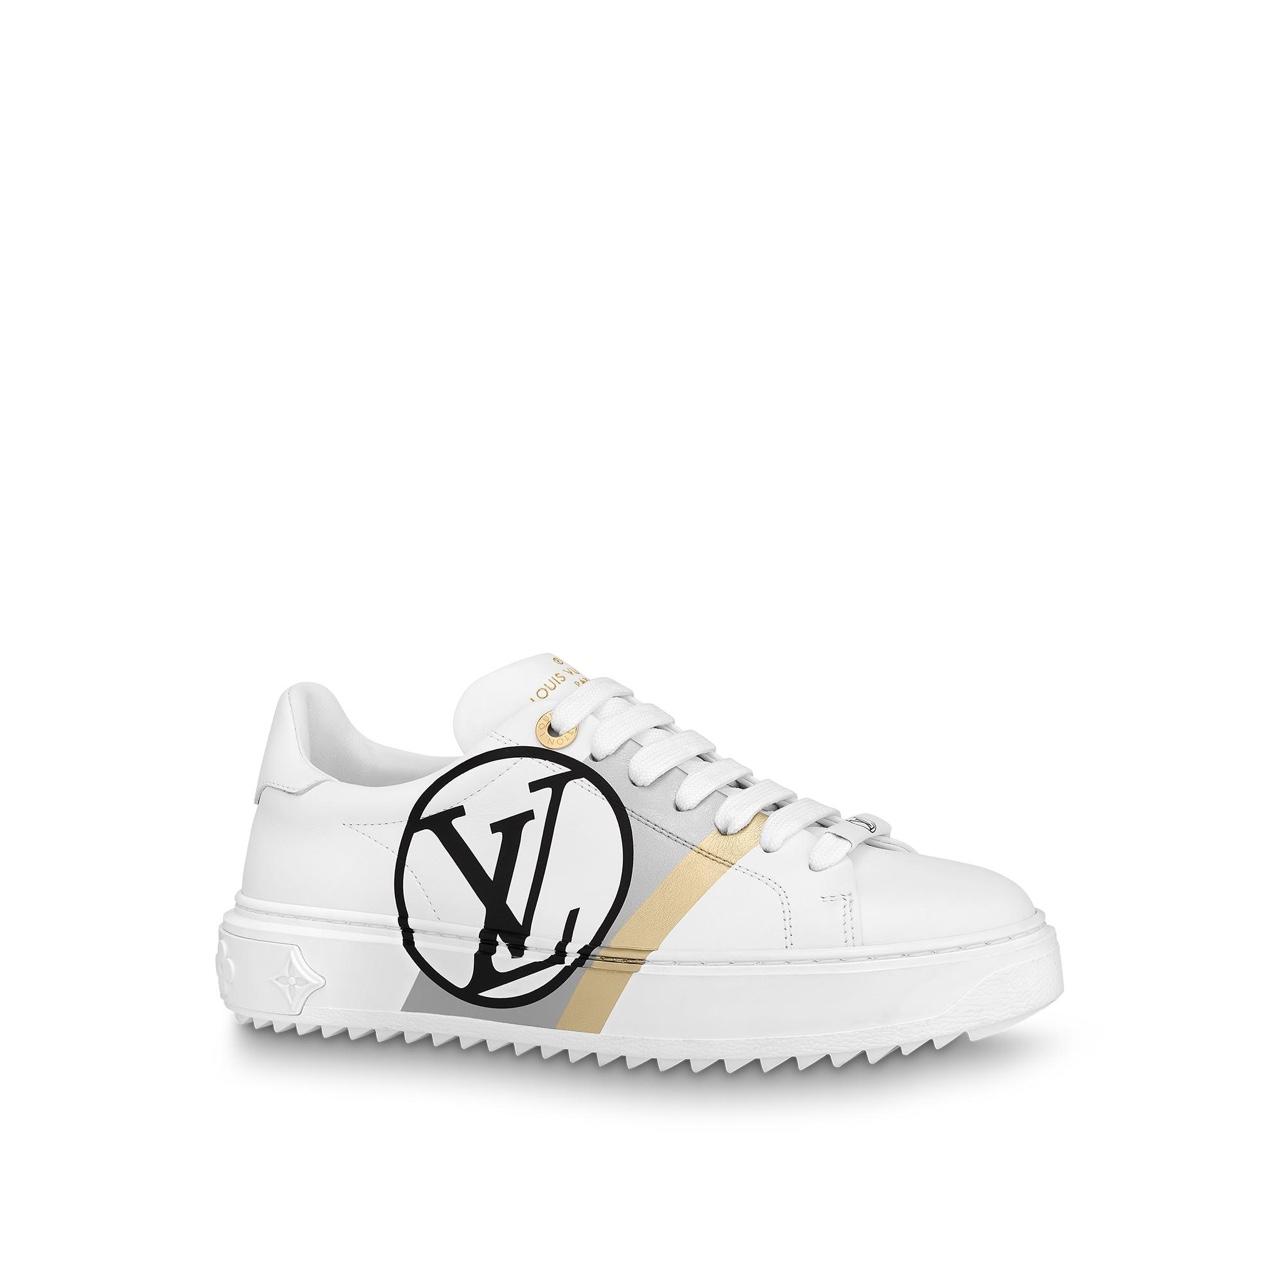 Authentic Louis Vuitton Time Out Sneakers Blanc/Noir - Depop